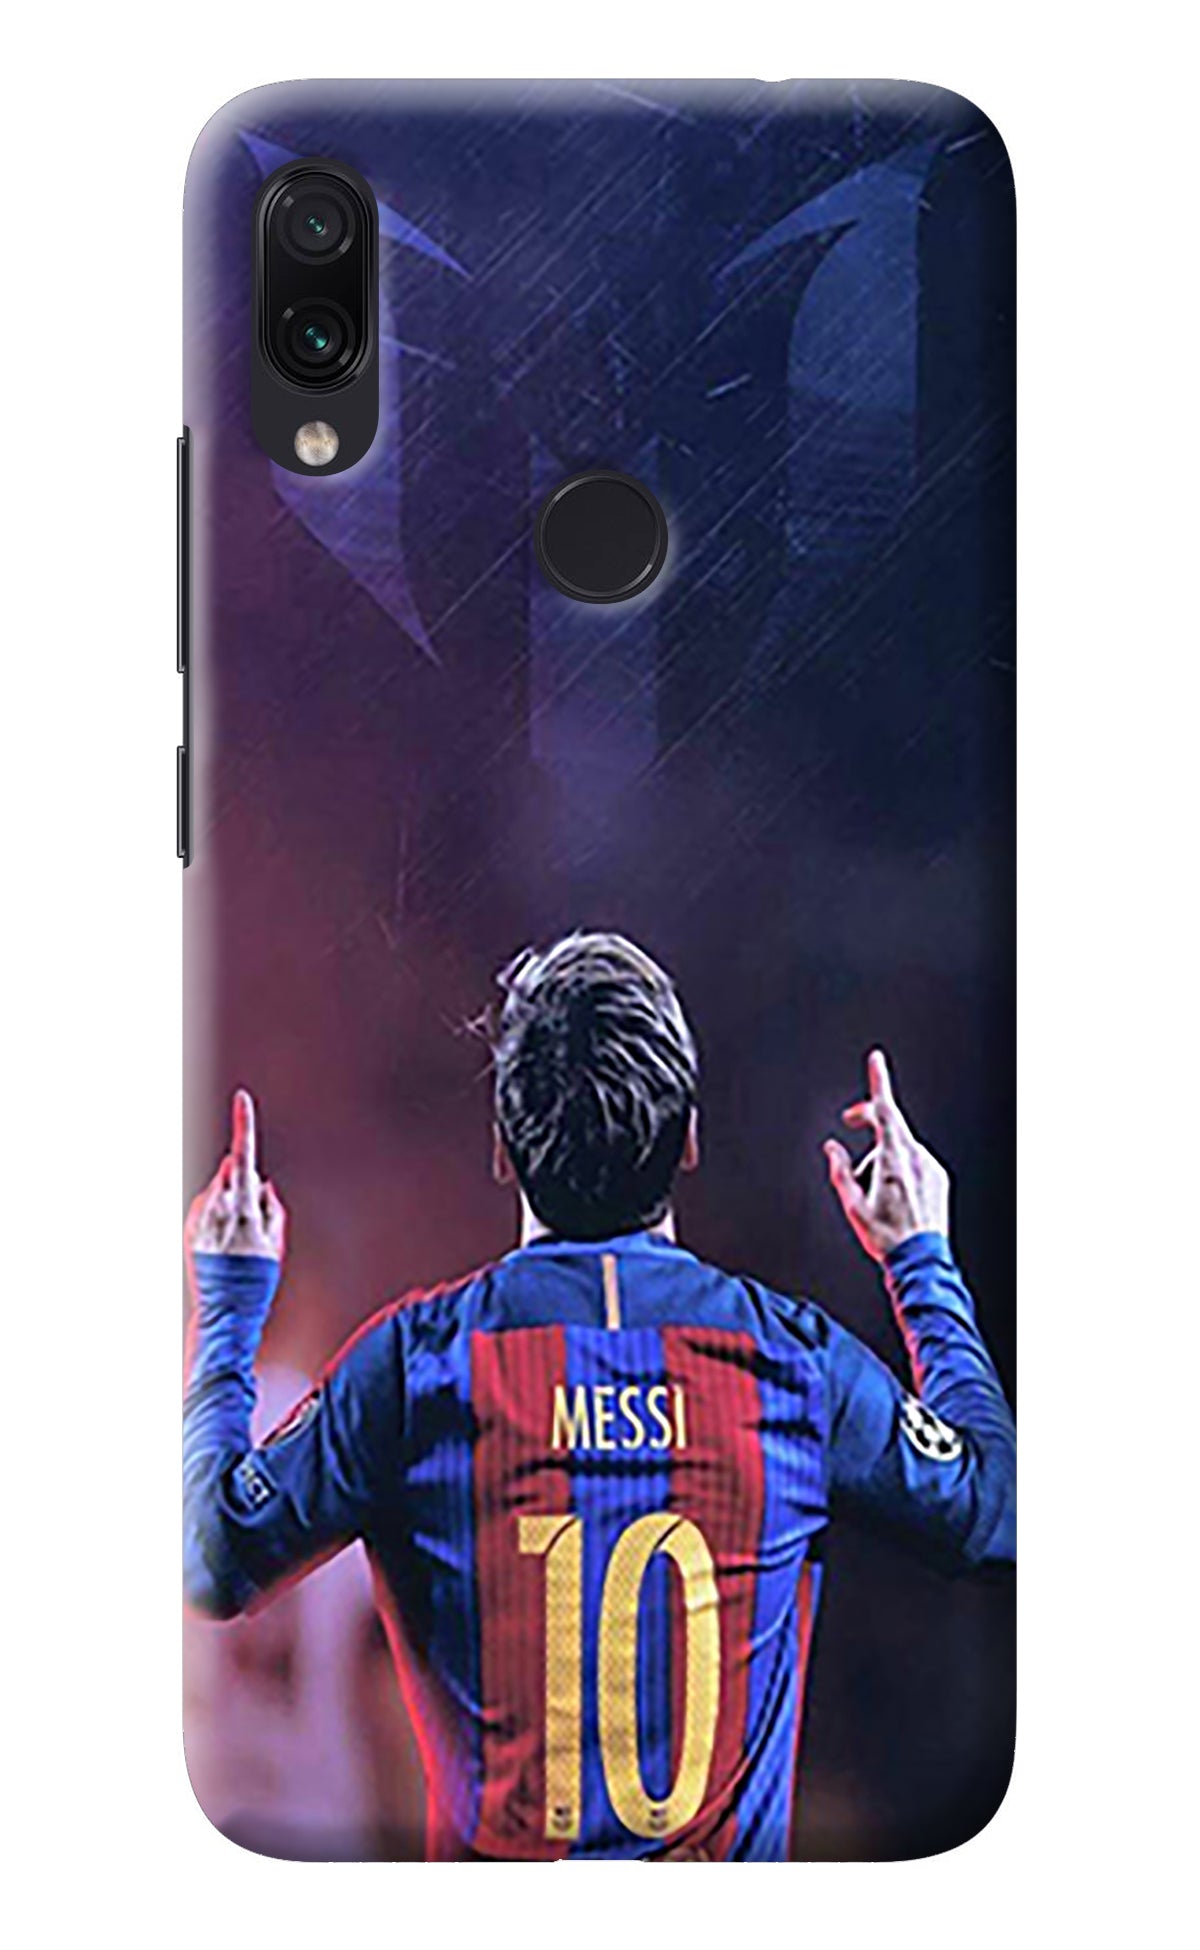 Messi Redmi Note 7/7S/7 Pro Back Cover